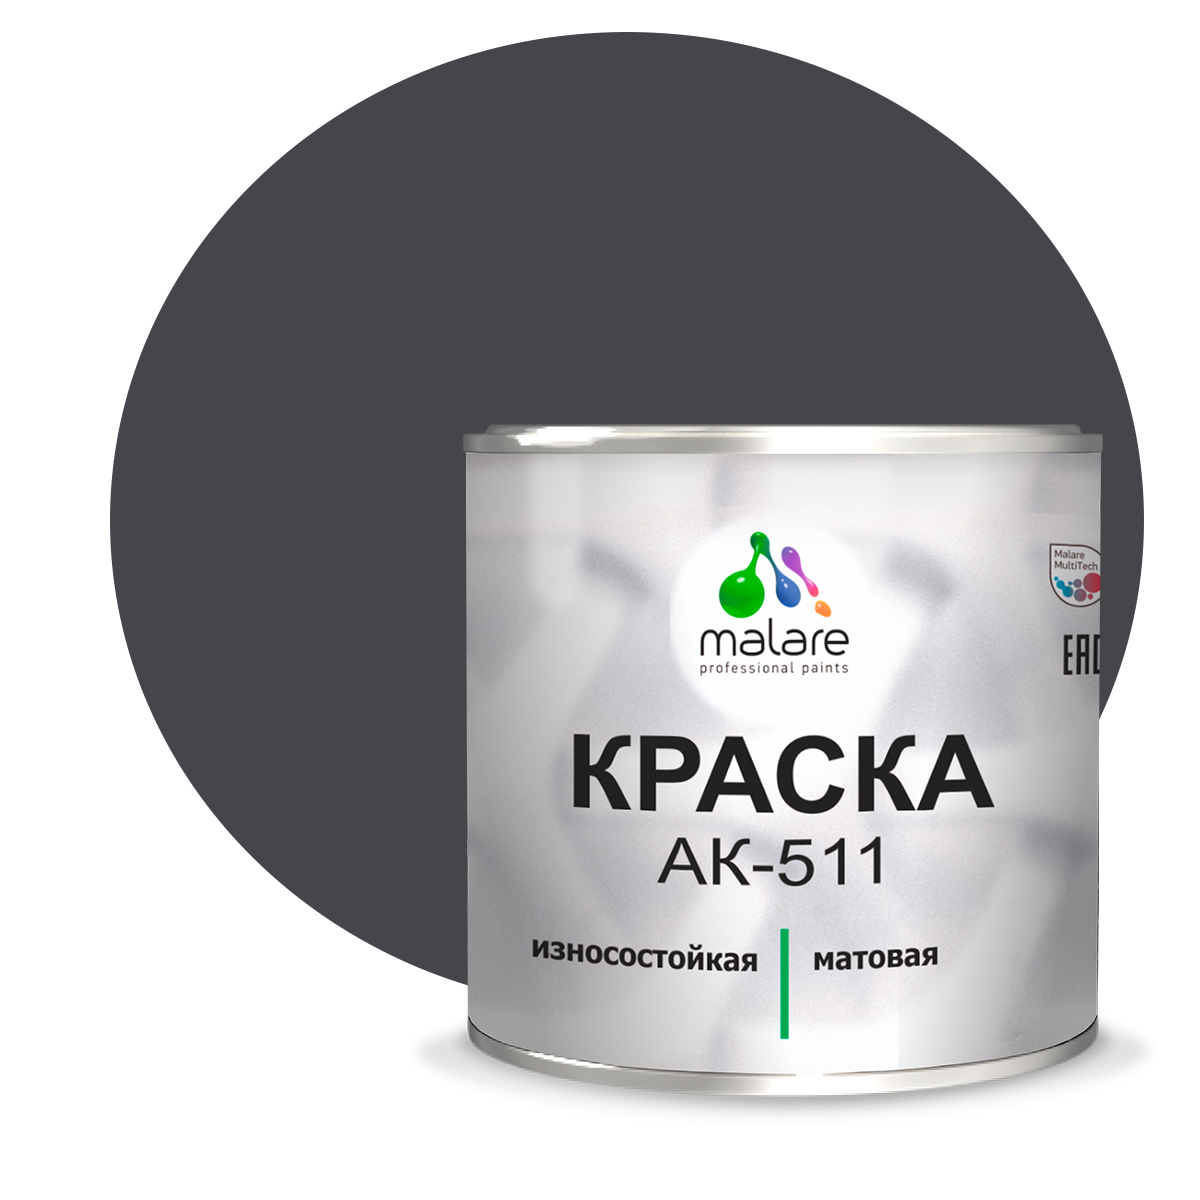 Краска Malare АК-511 для дорожной разметки для пола RAL 7024 графитово-серый 2,5 кг. краска ак 511 для дорожной разметки желтая 25кг гост 32830 2014